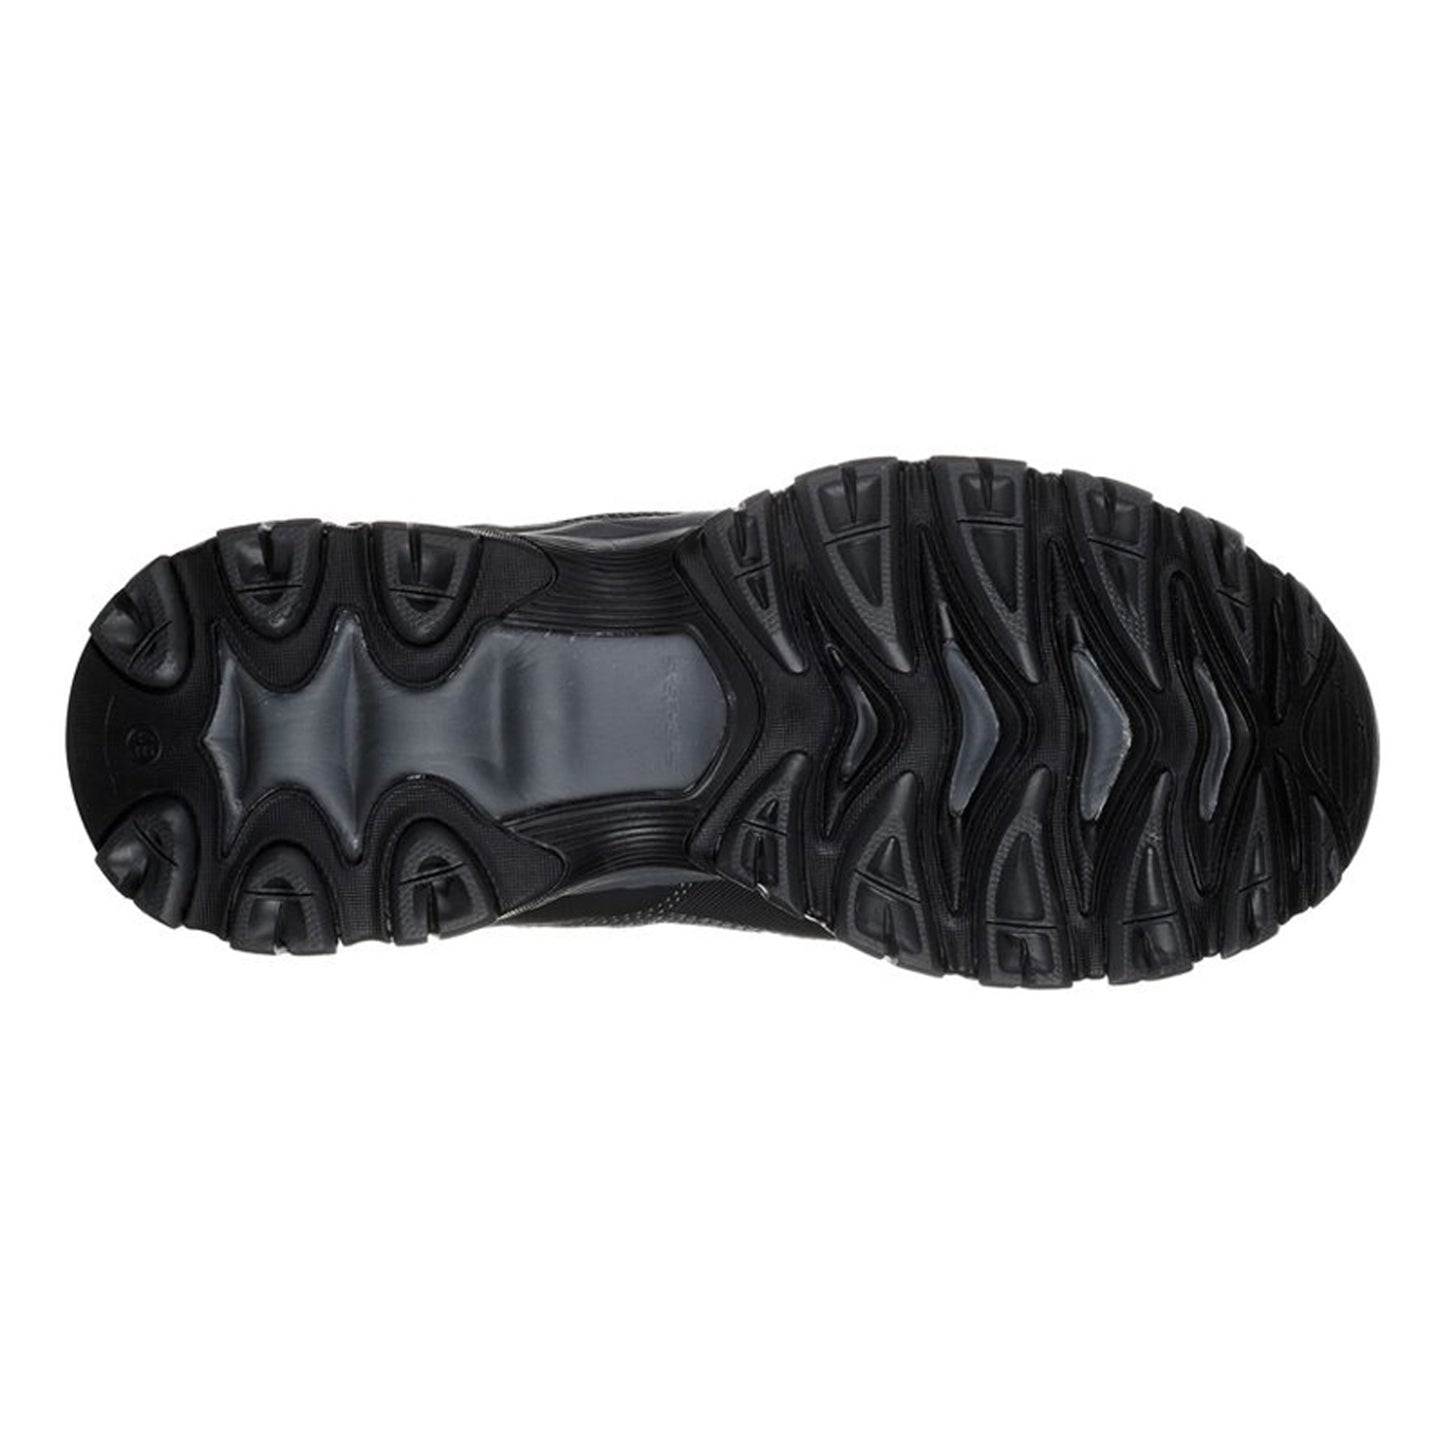 Peltz Shoes  Men's Skechers Cankton - Ebbitt Steel Toe Work Shoe Black 77161-BLK